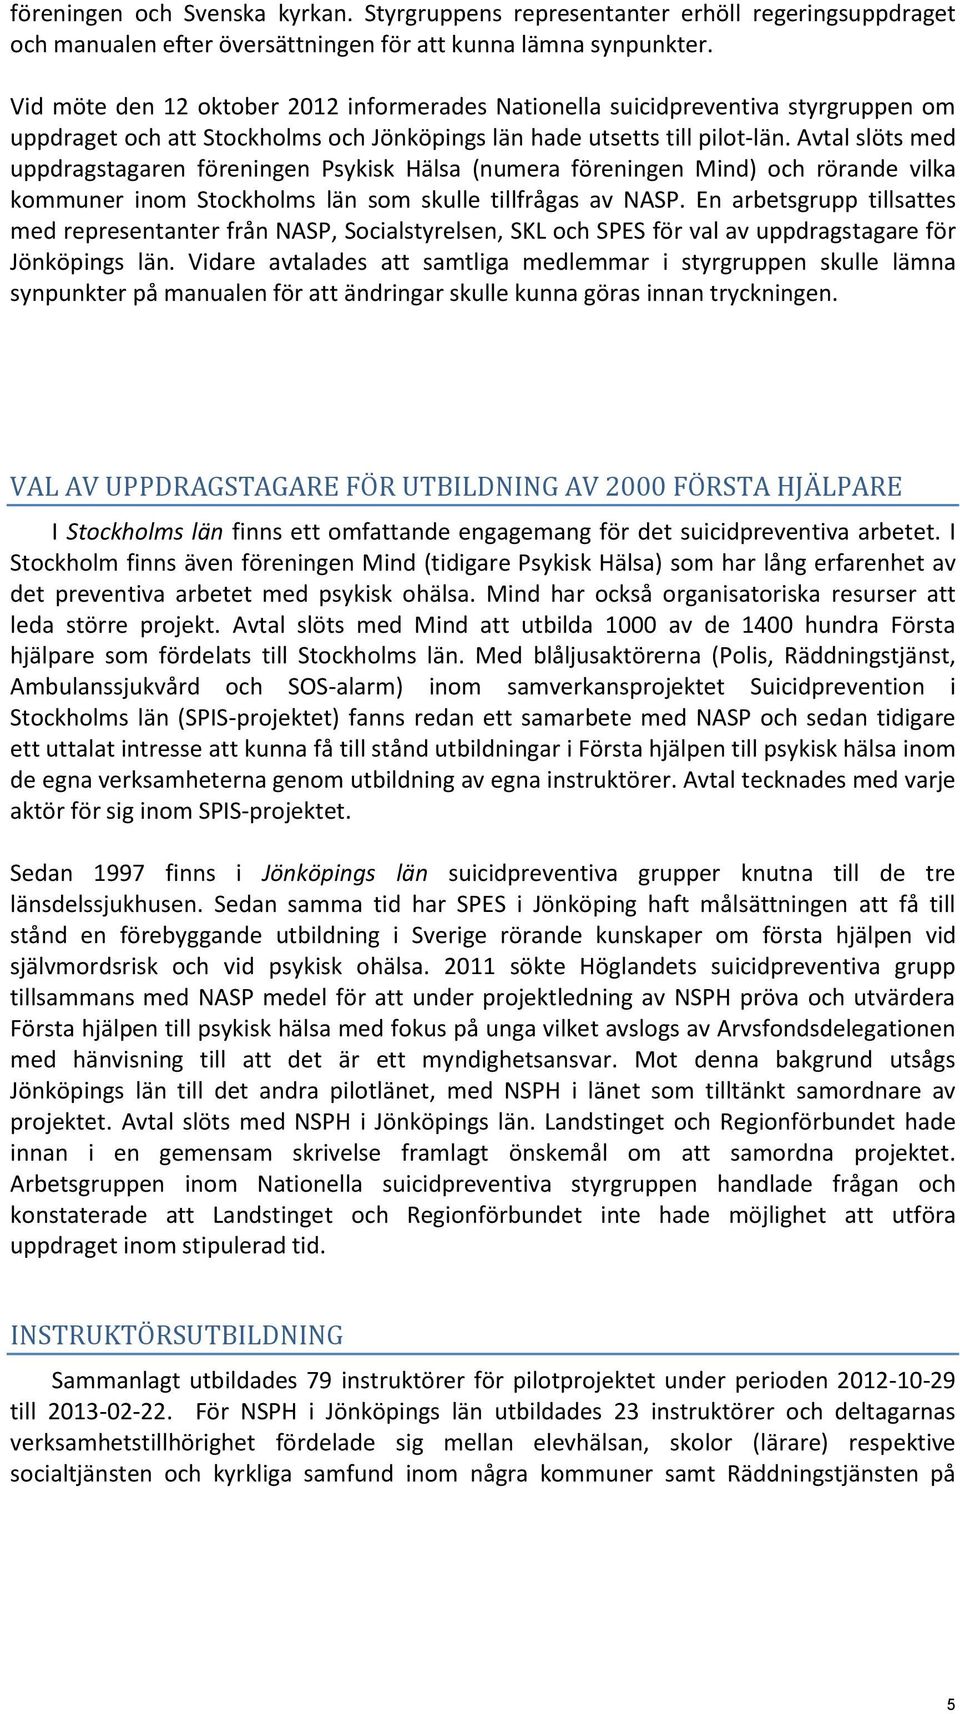 Avtal slöts med uppdragstagaren föreningen Psykisk Hälsa (numera föreningen Mind) och rörande vilka kommuner inom Stockholms län som skulle tillfrågas av NASP.